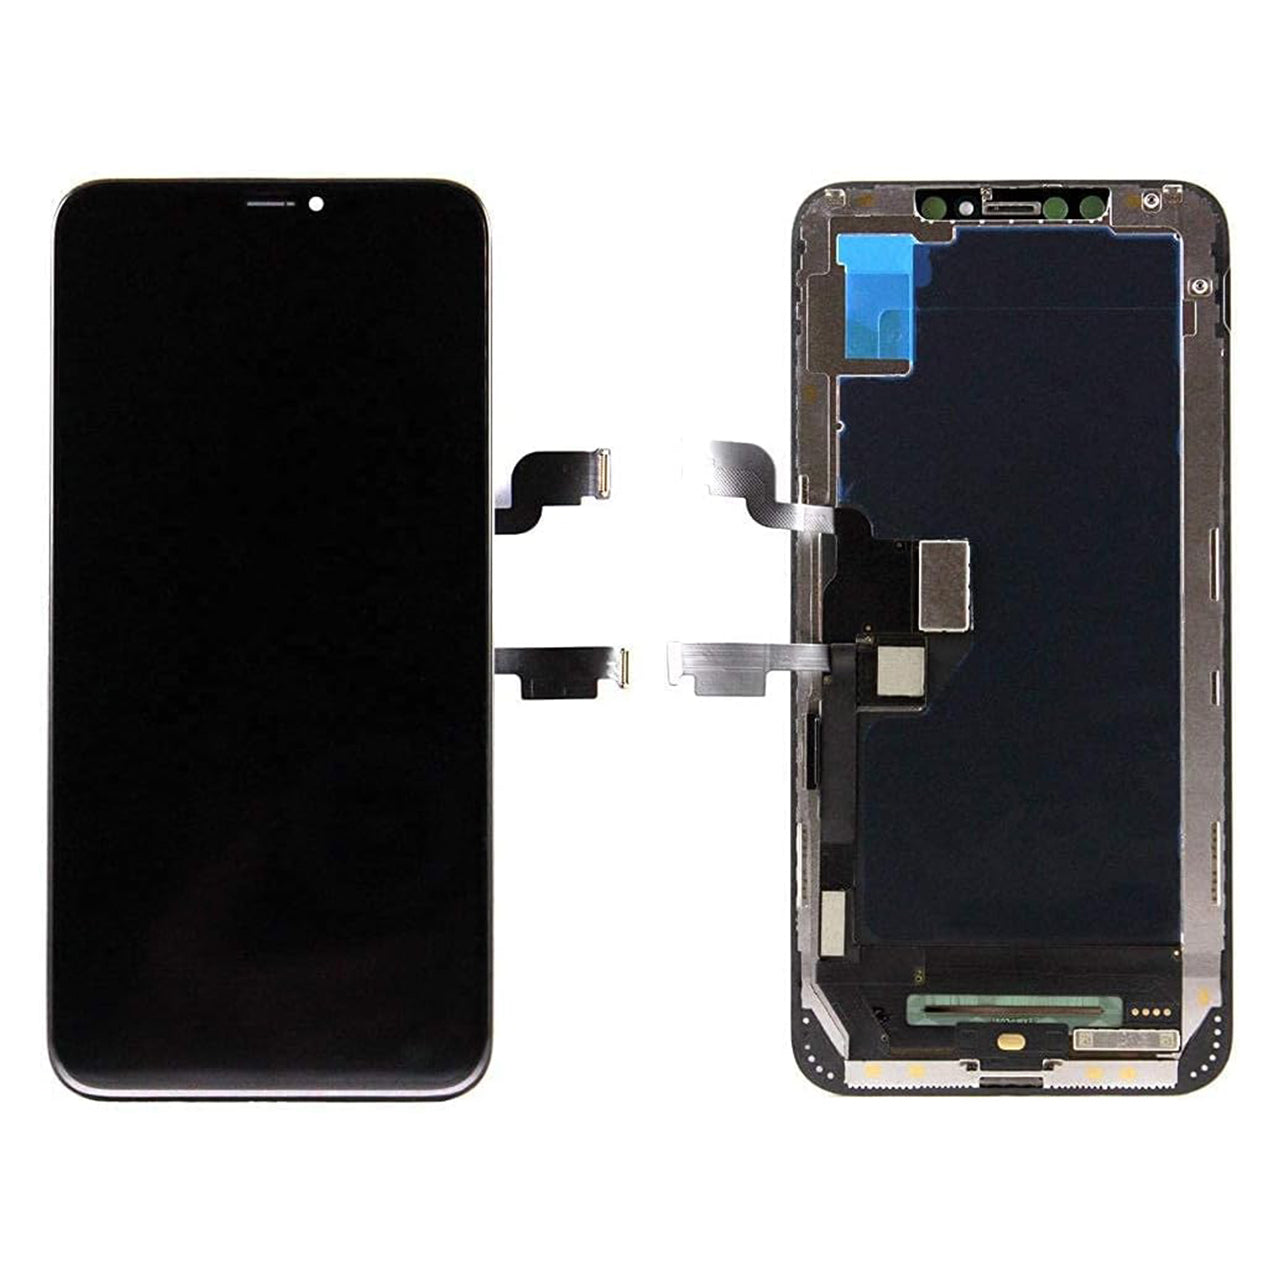 iPhone XS Max reparacion de pantalla LCD 6.5” - iPhone XS Max LCD Screen Replacement (A2101, A2102, A2104)